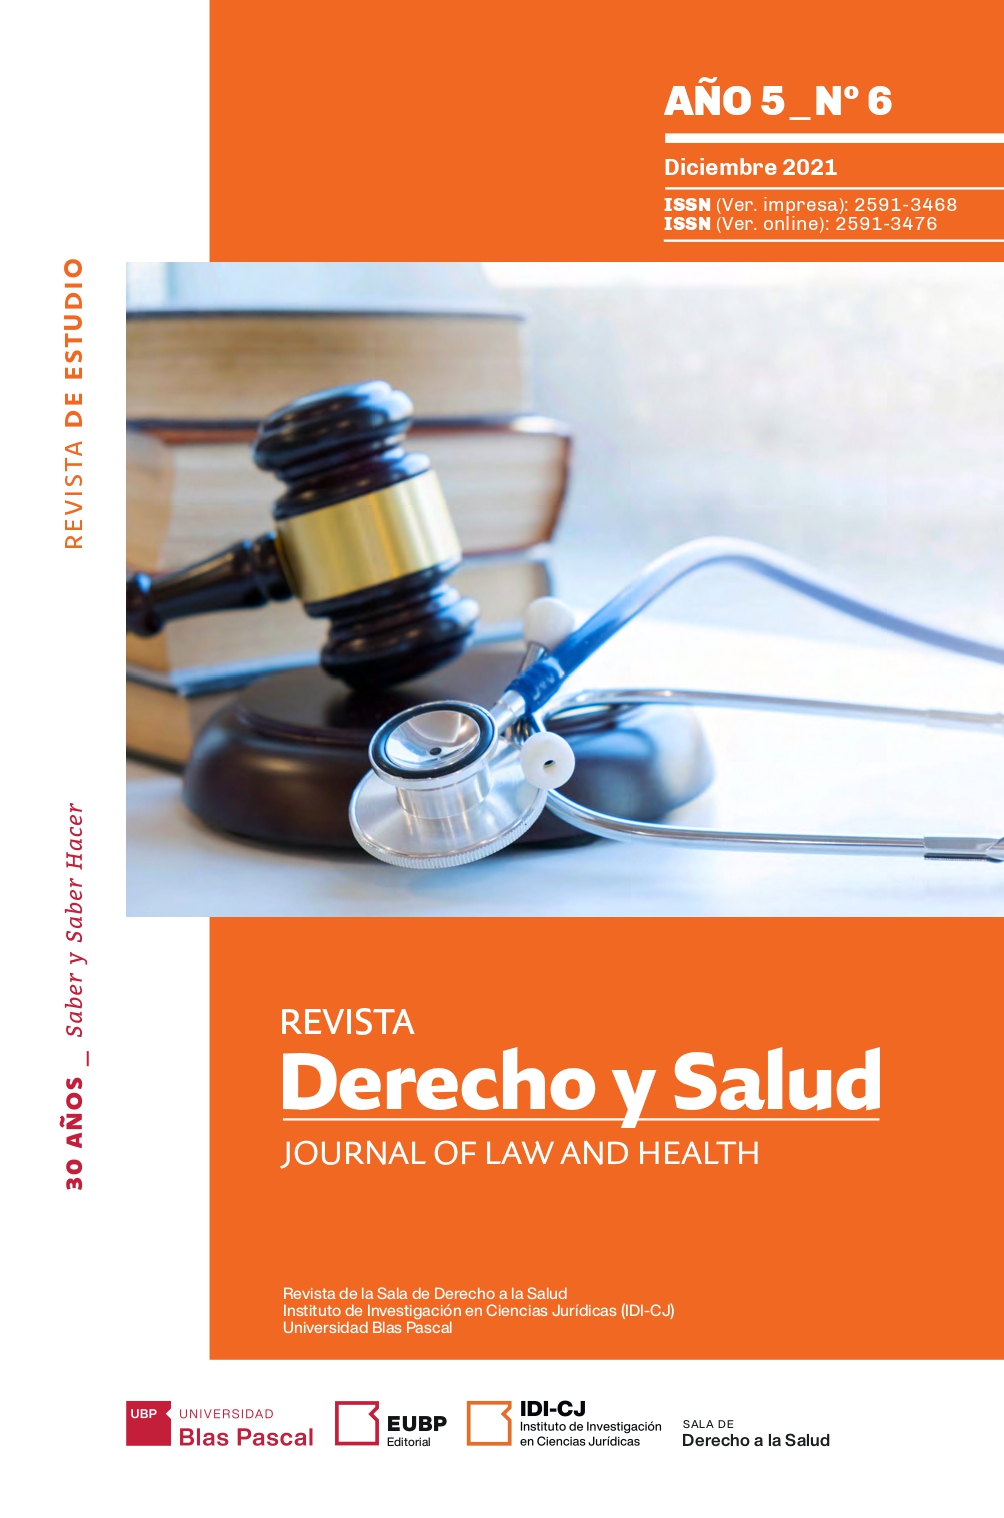 Miniatura de la portada de la Revista Derecho y Salud